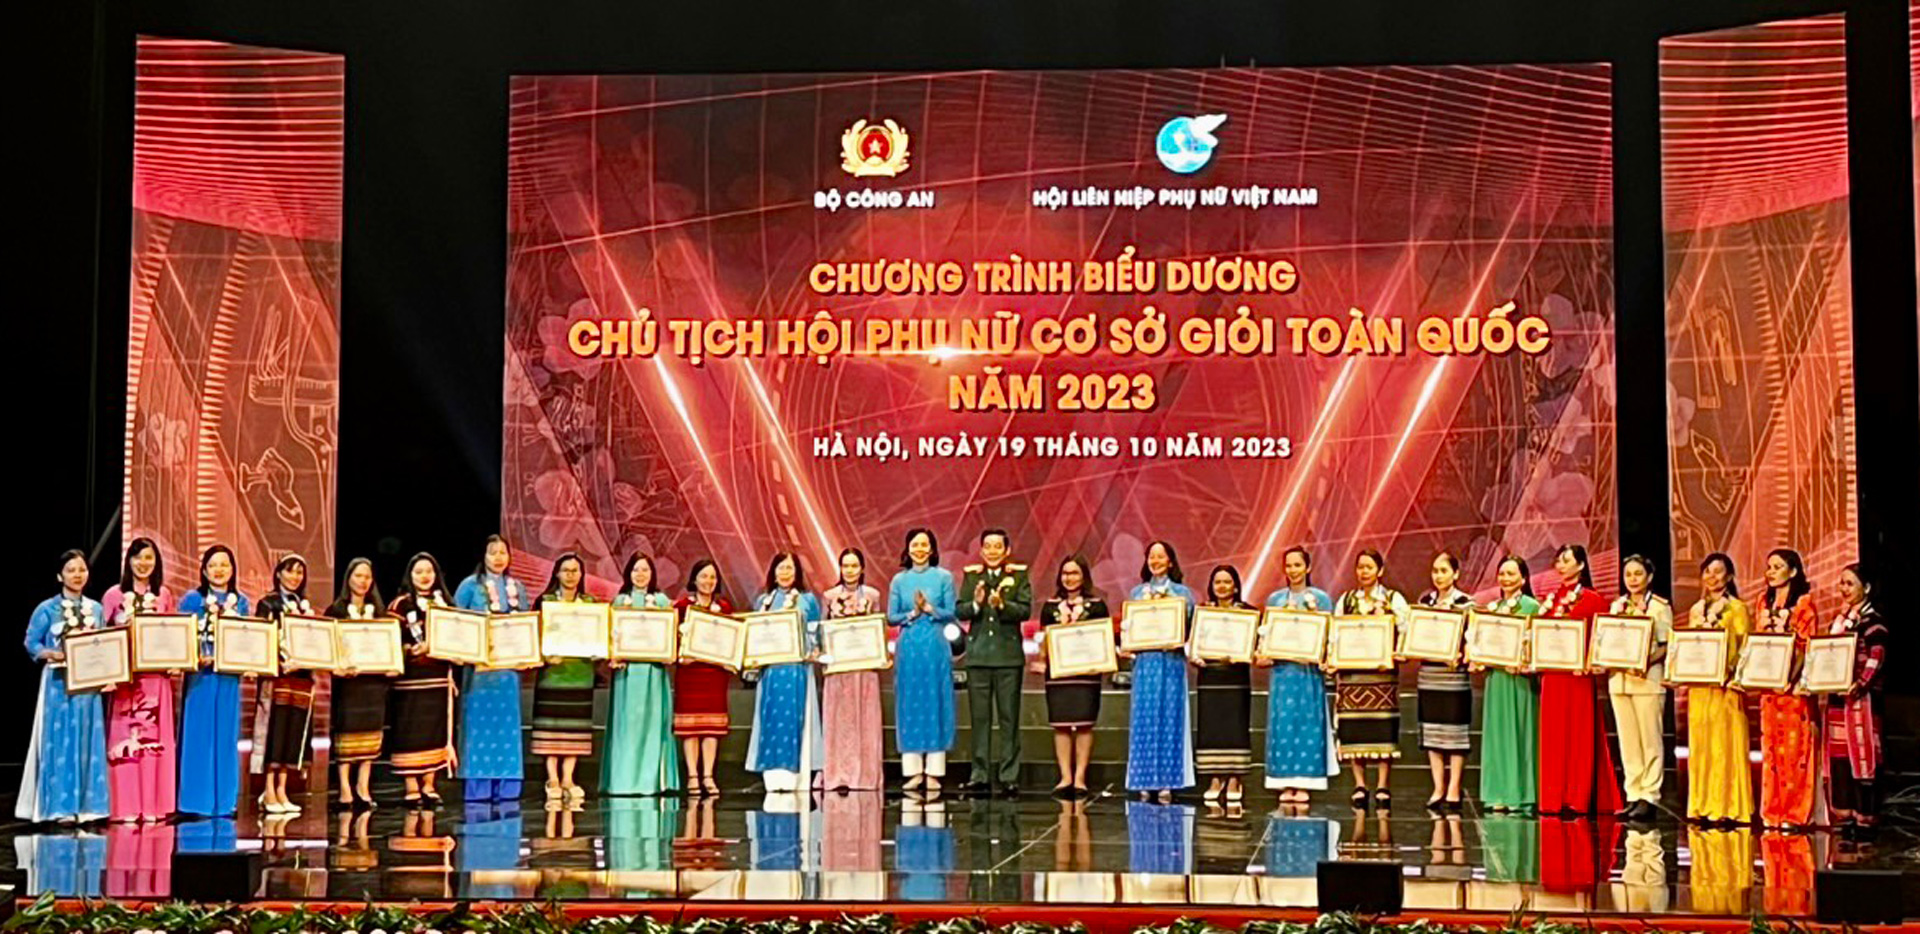 4 Chủ tịch Hội Phụ nữ cơ sở tỉnh Lâm Đồng (thứ 8, 9, 10, 11 từ phải qua) được biểu dương tại chương trình